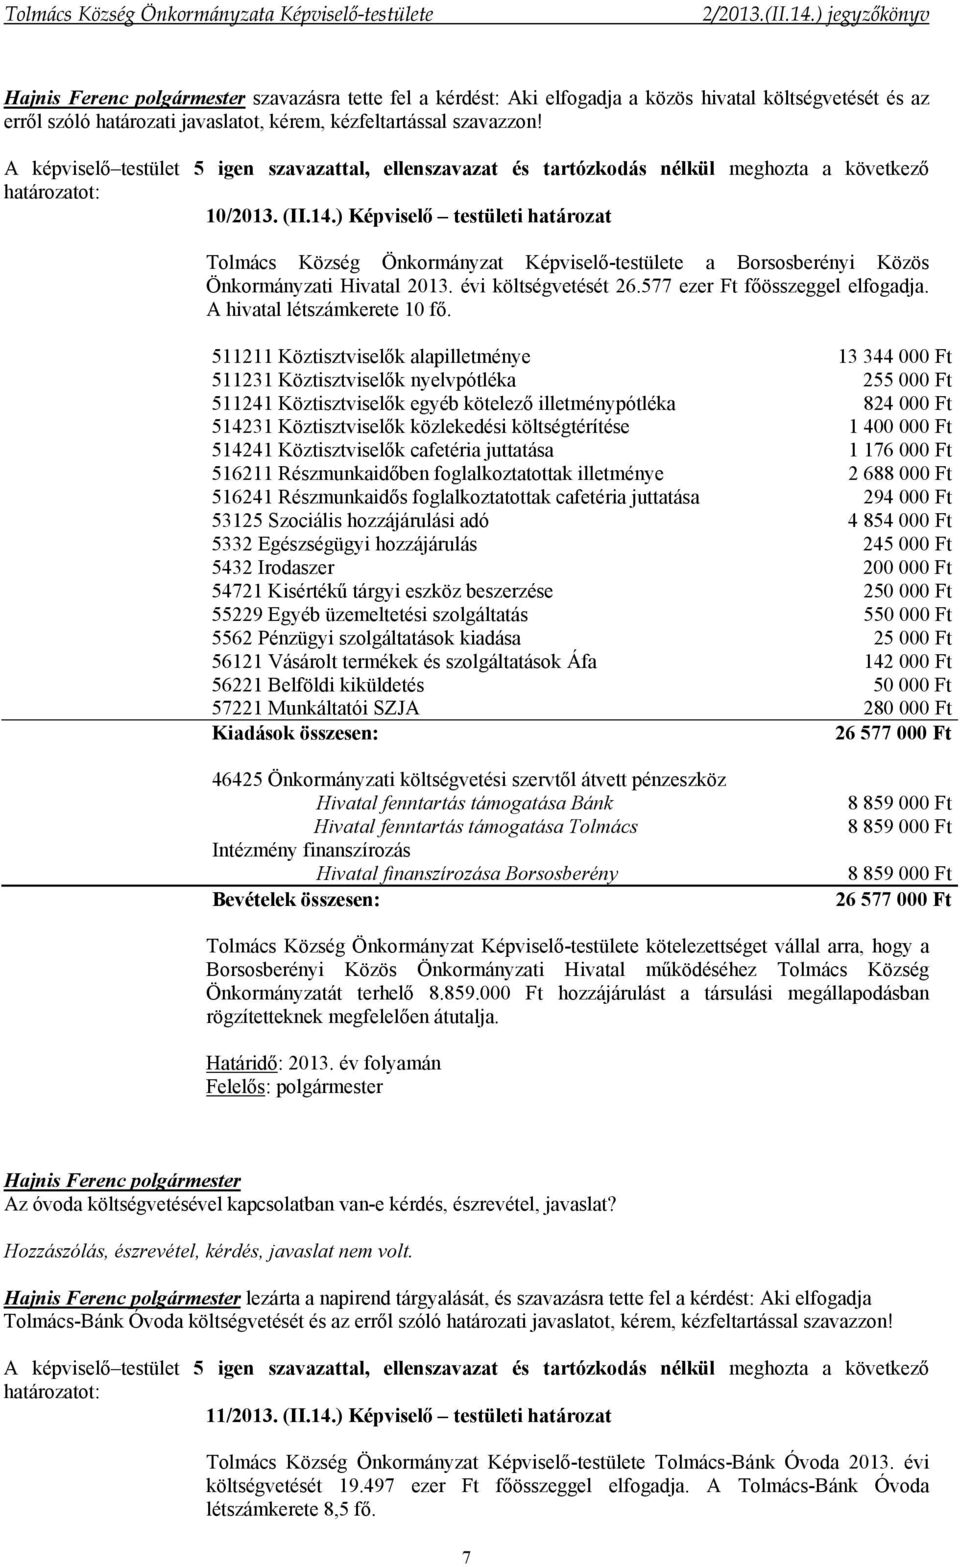 ) Képviselő testületi határozat Tolmács Község Önkormányzat Képviselő-testülete a Borsosberényi Közös Önkormányzati Hivatal 2013. évi költségvetését 26.577 ezer Ft főösszeggel elfogadja.